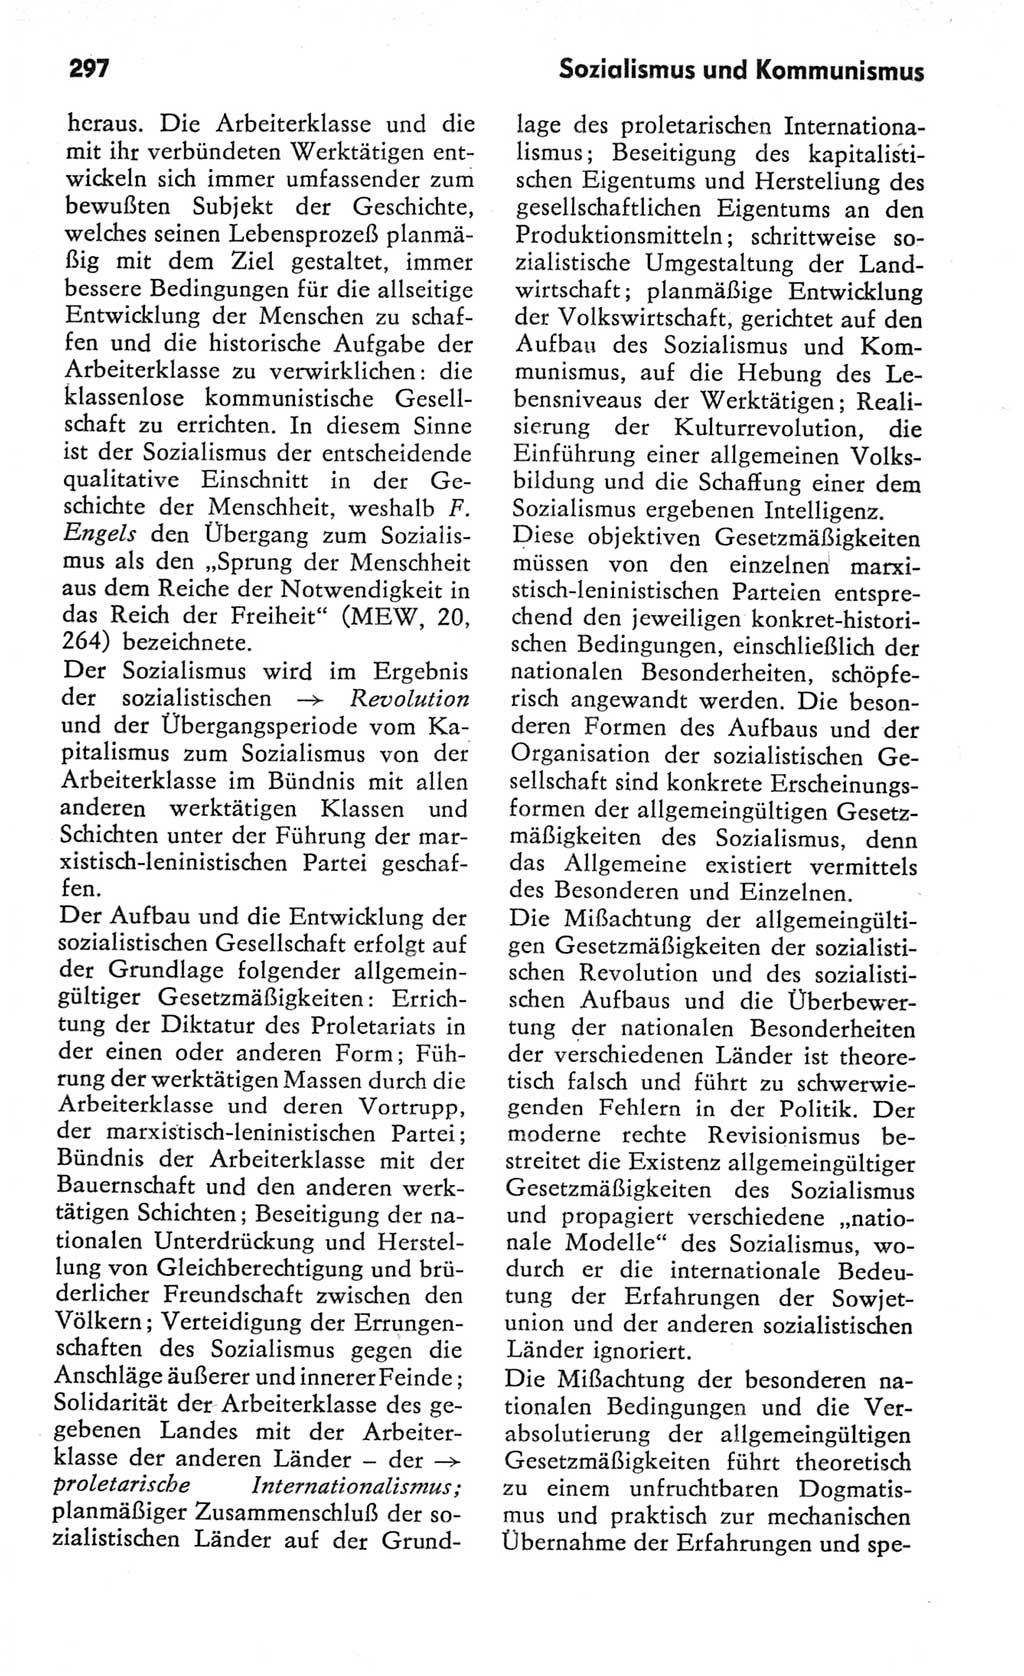 Kleines Wörterbuch der marxistisch-leninistischen Philosophie [Deutsche Demokratische Republik (DDR)] 1982, Seite 297 (Kl. Wb. ML Phil. DDR 1982, S. 297)